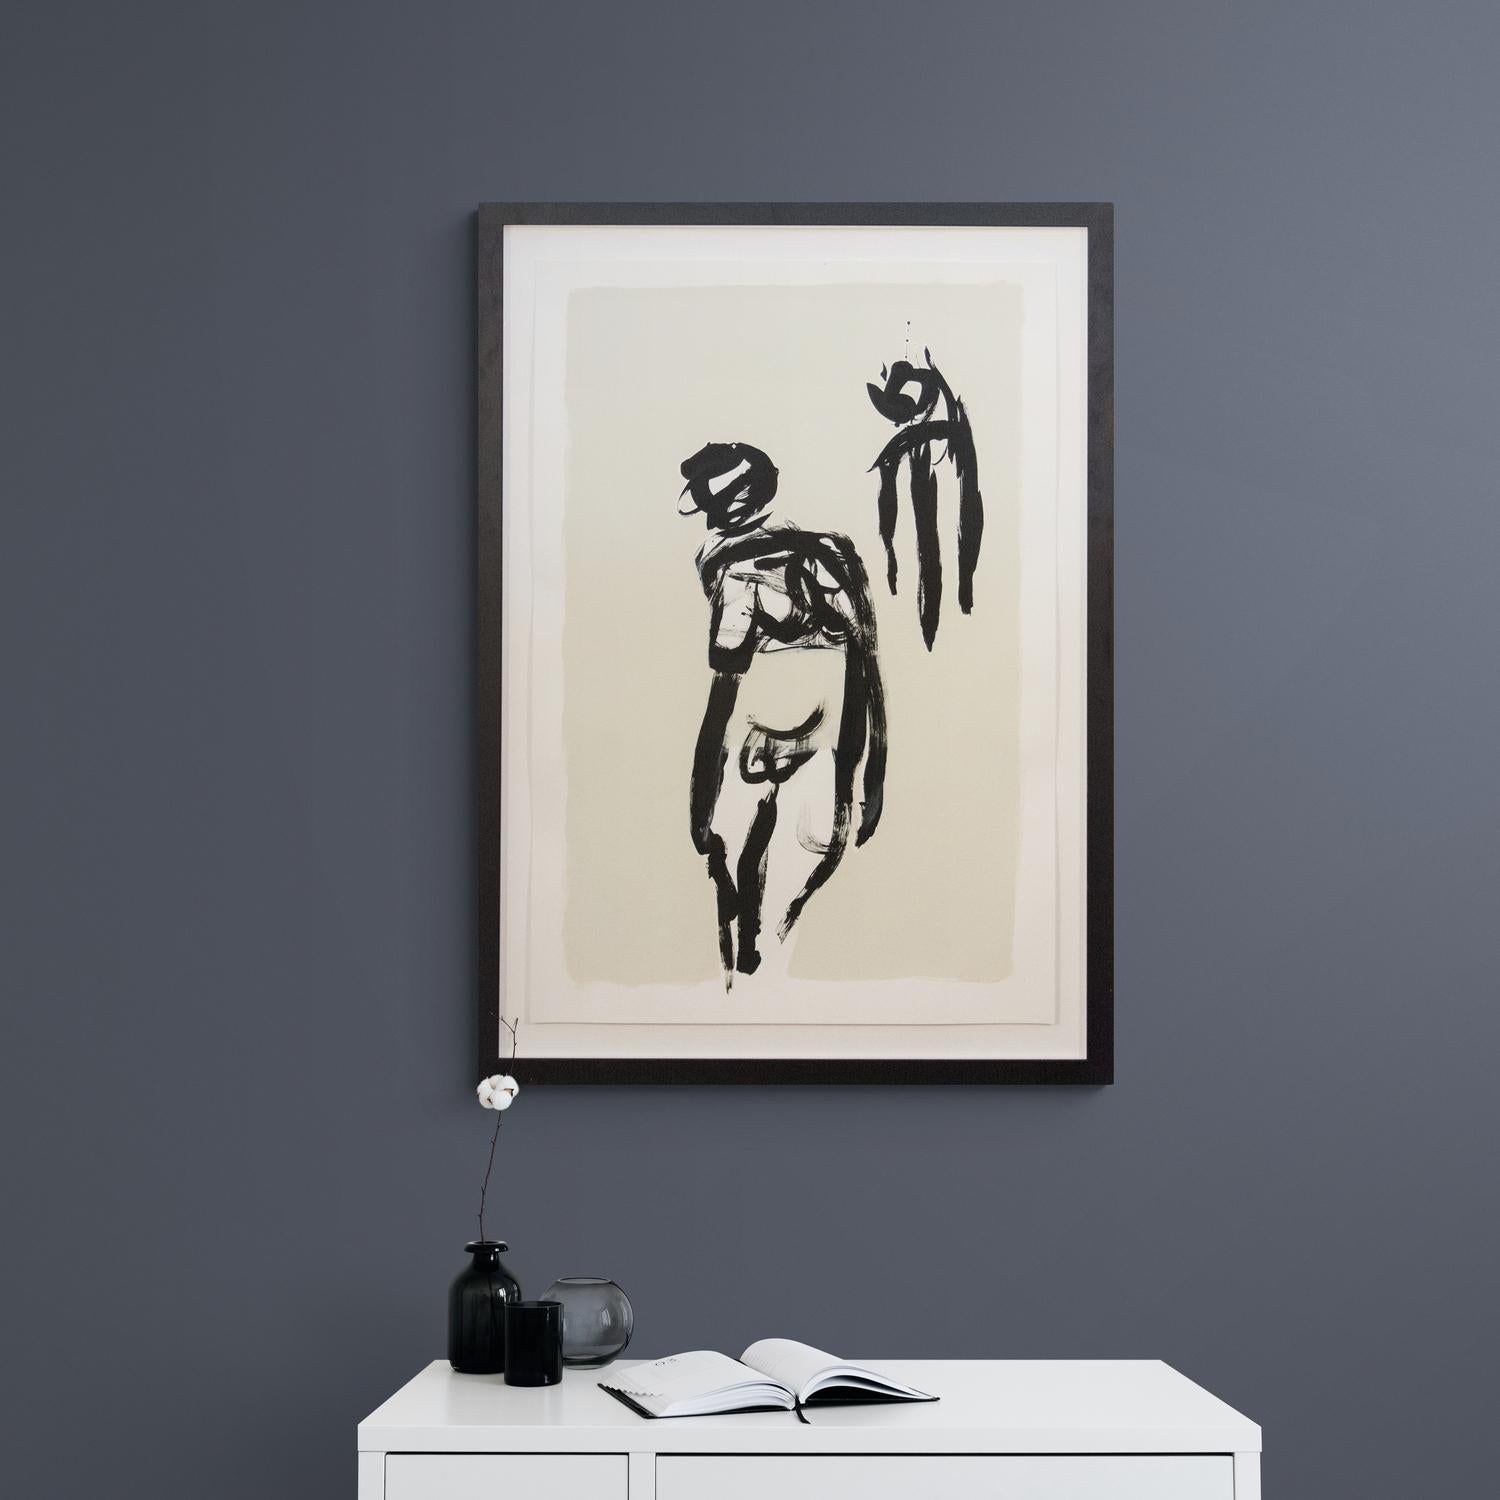 Mit kalligrafischen Pinselstrichen in schwarzer Tinte wird die nackte Figur des Aphroditus im Kontrapost dargestellt, ähnlich wie bei antiken griechischen und römischen Darstellungen der männlichen Aphrodite. 

Lynne Fernie ist eine Künstlerin aus